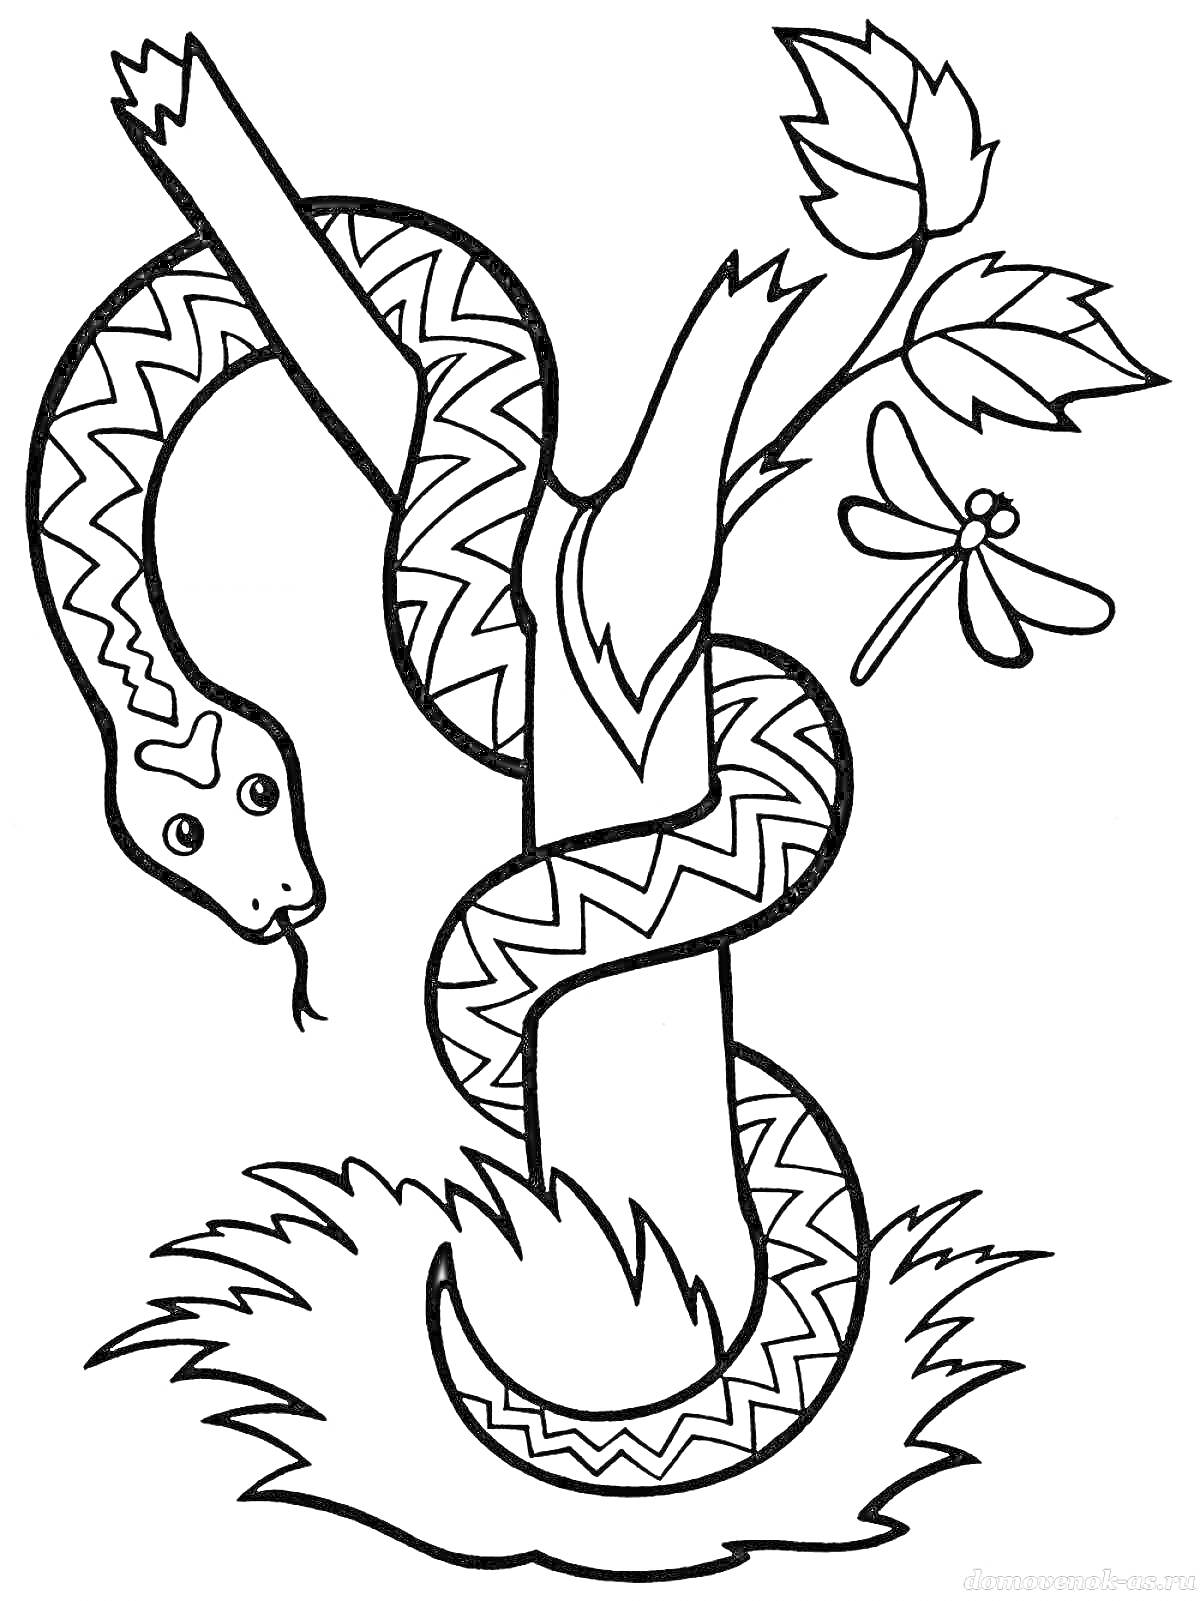 Раскраска Змея и стрекоза на ветке, формирующие букву У